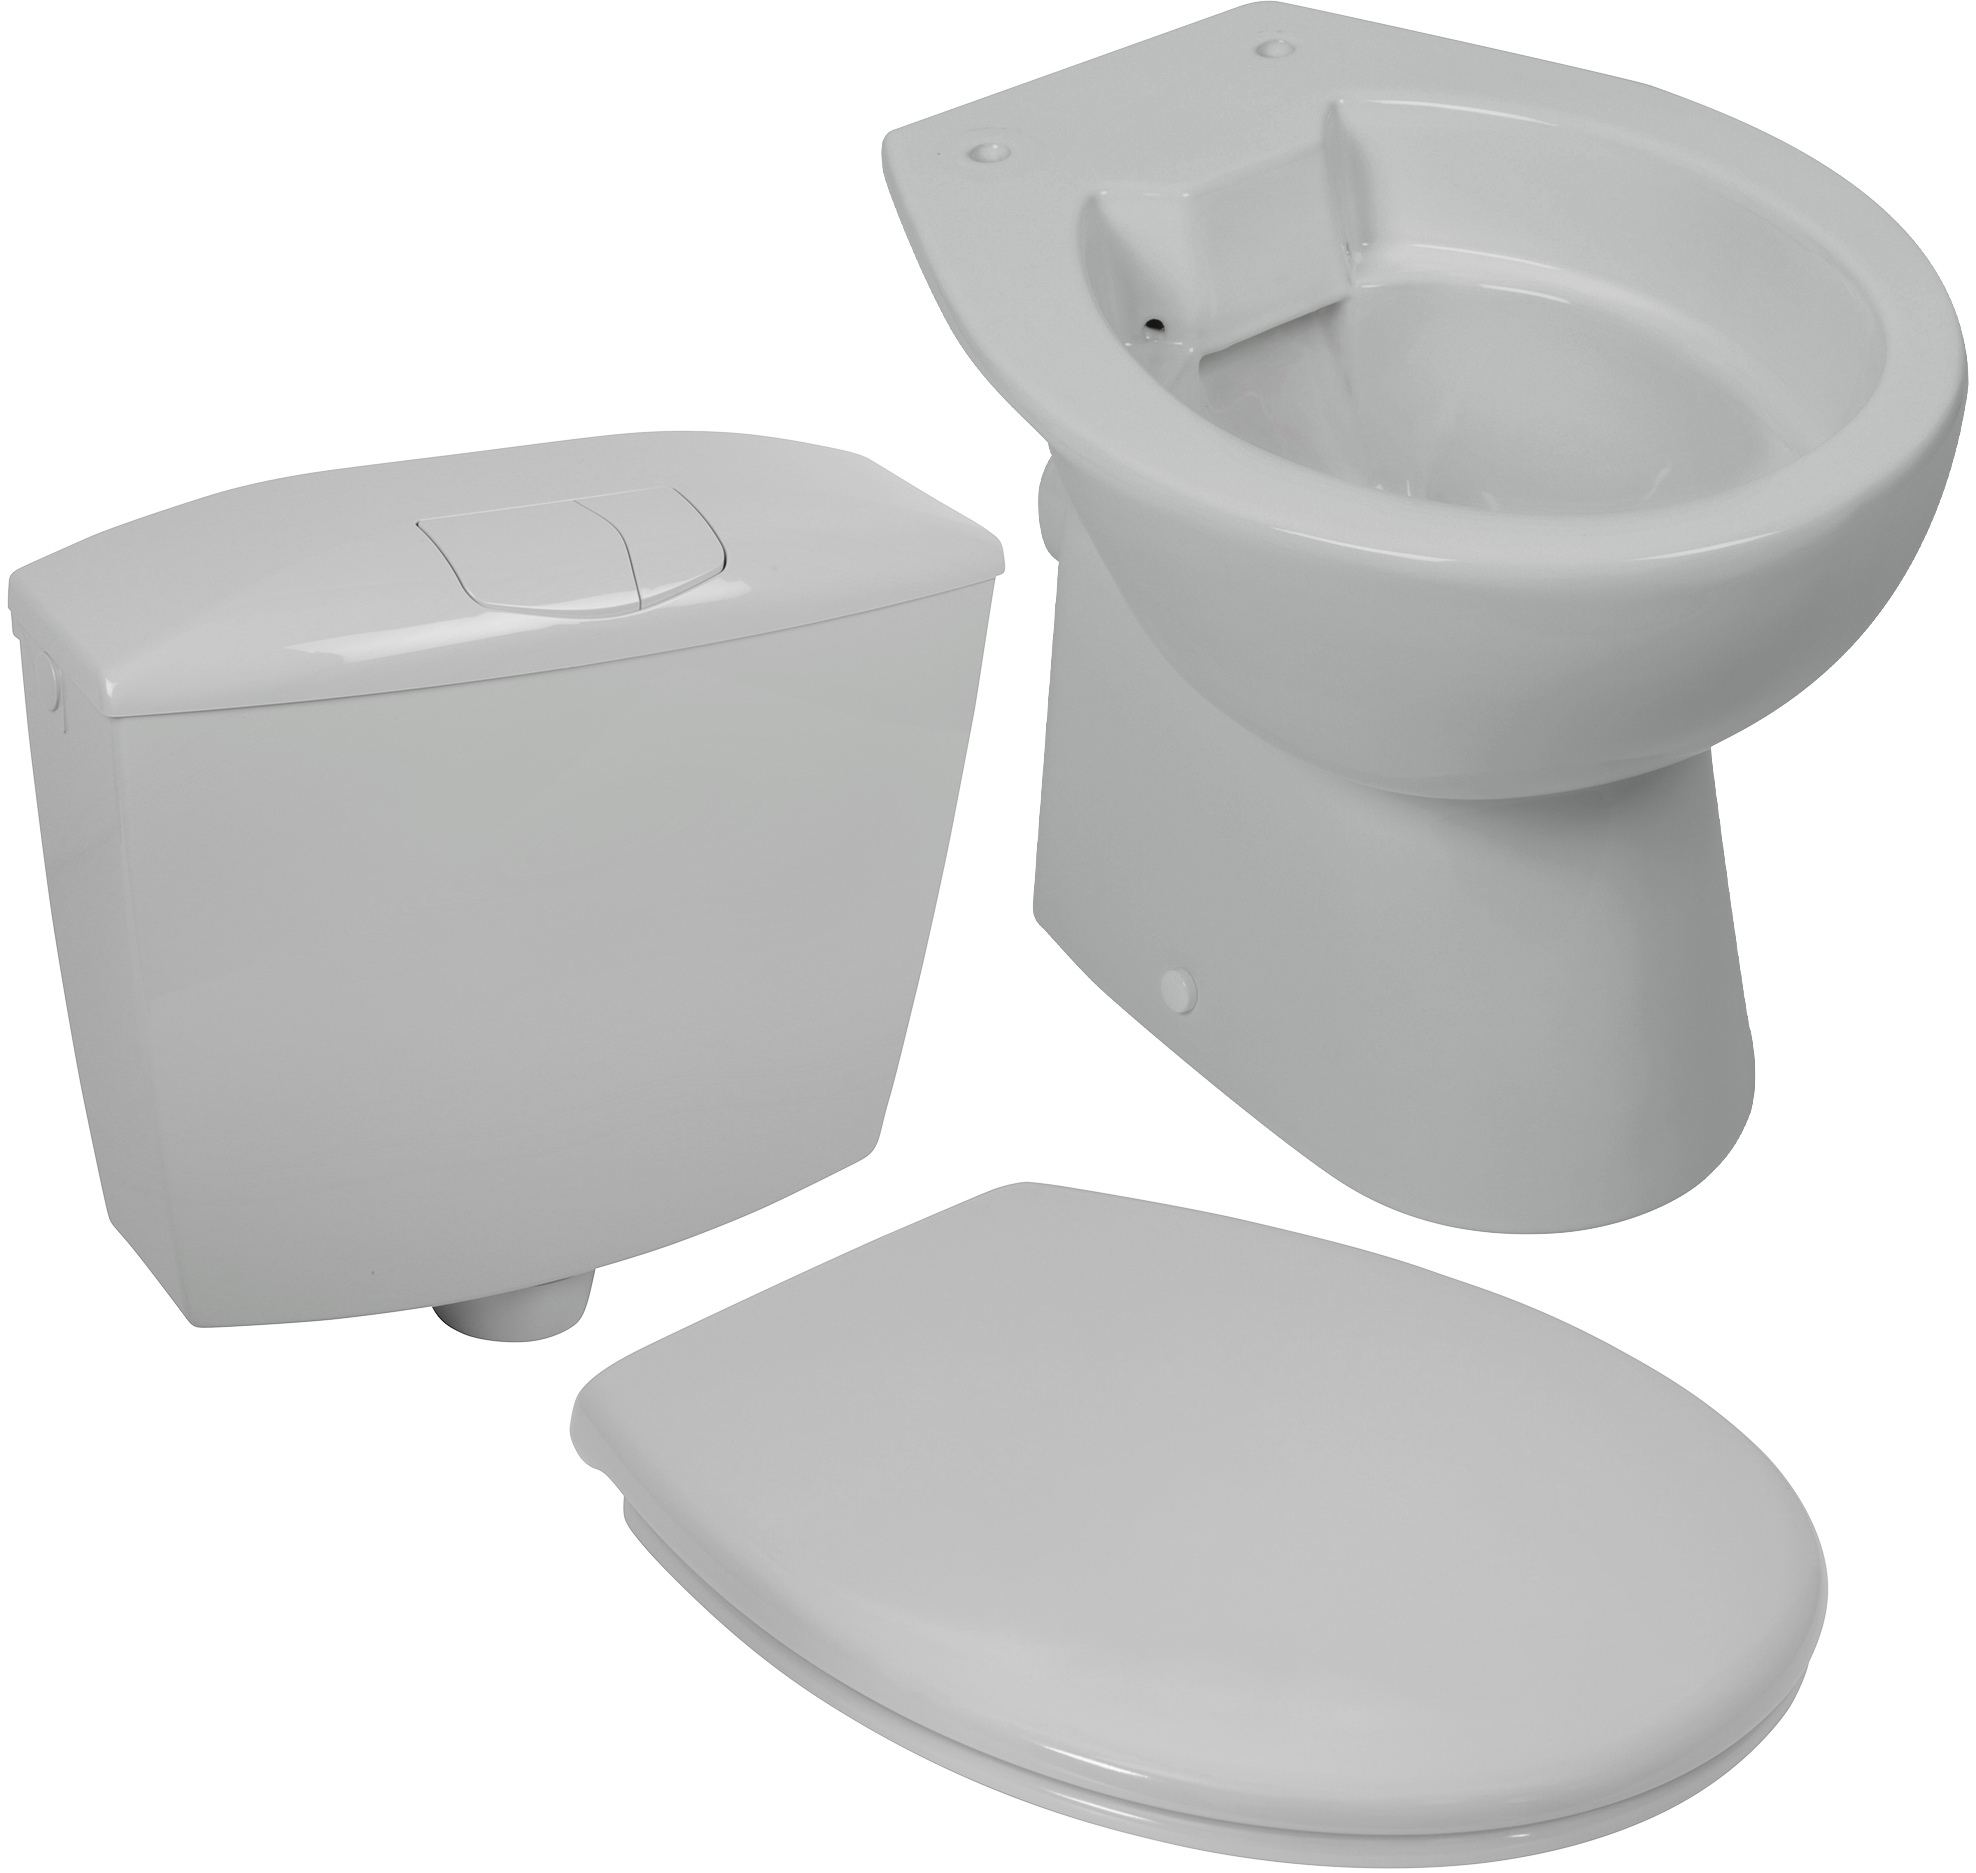 Komplett-Set in Manhattan-Grau mit spülrandlosem Stand-WC, WC-Sitz und Spülkasten